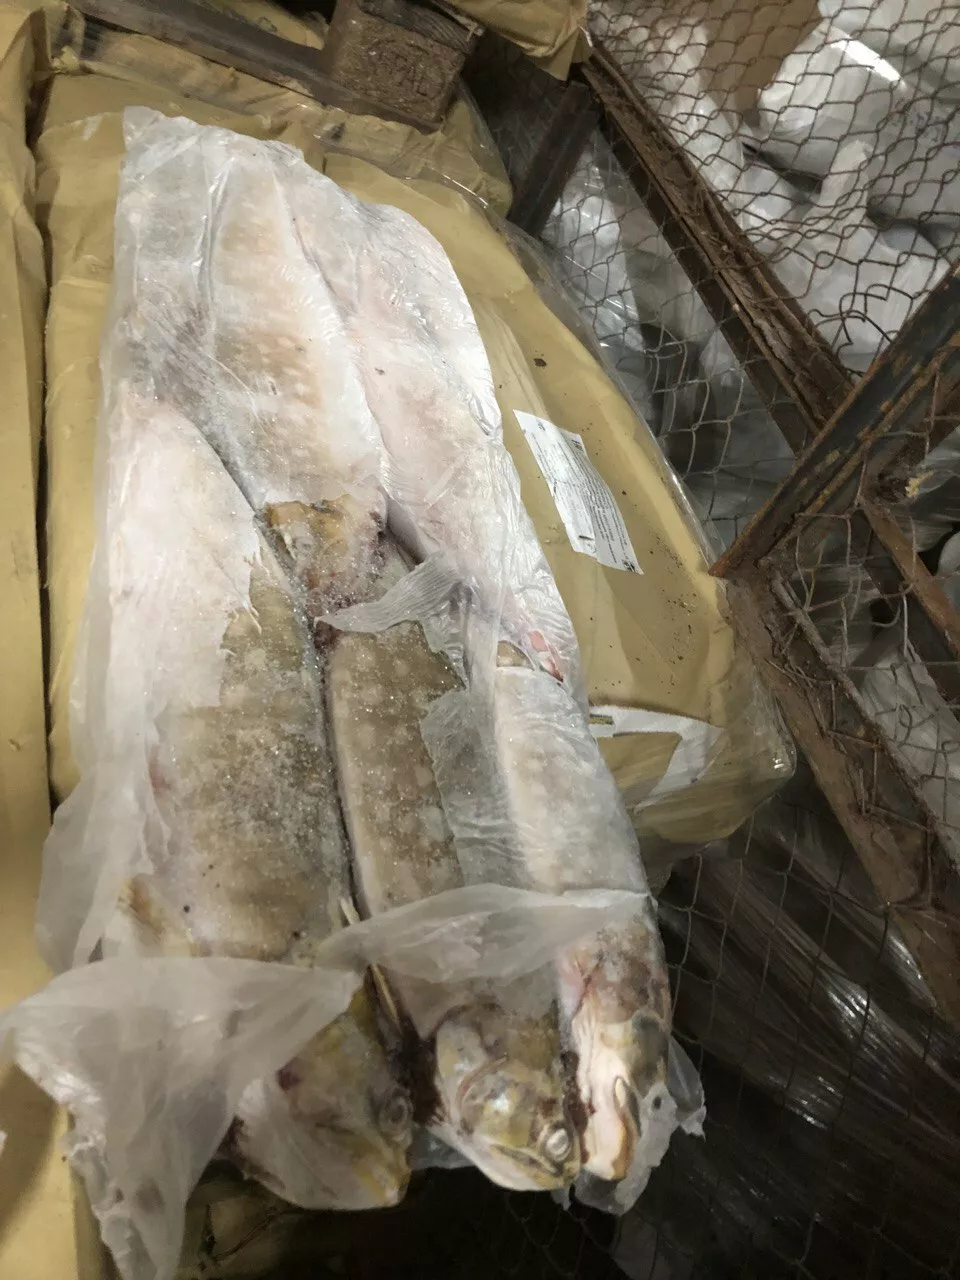 мороженную пищевую рыбную продукцию в Самаре и Самарской области 8